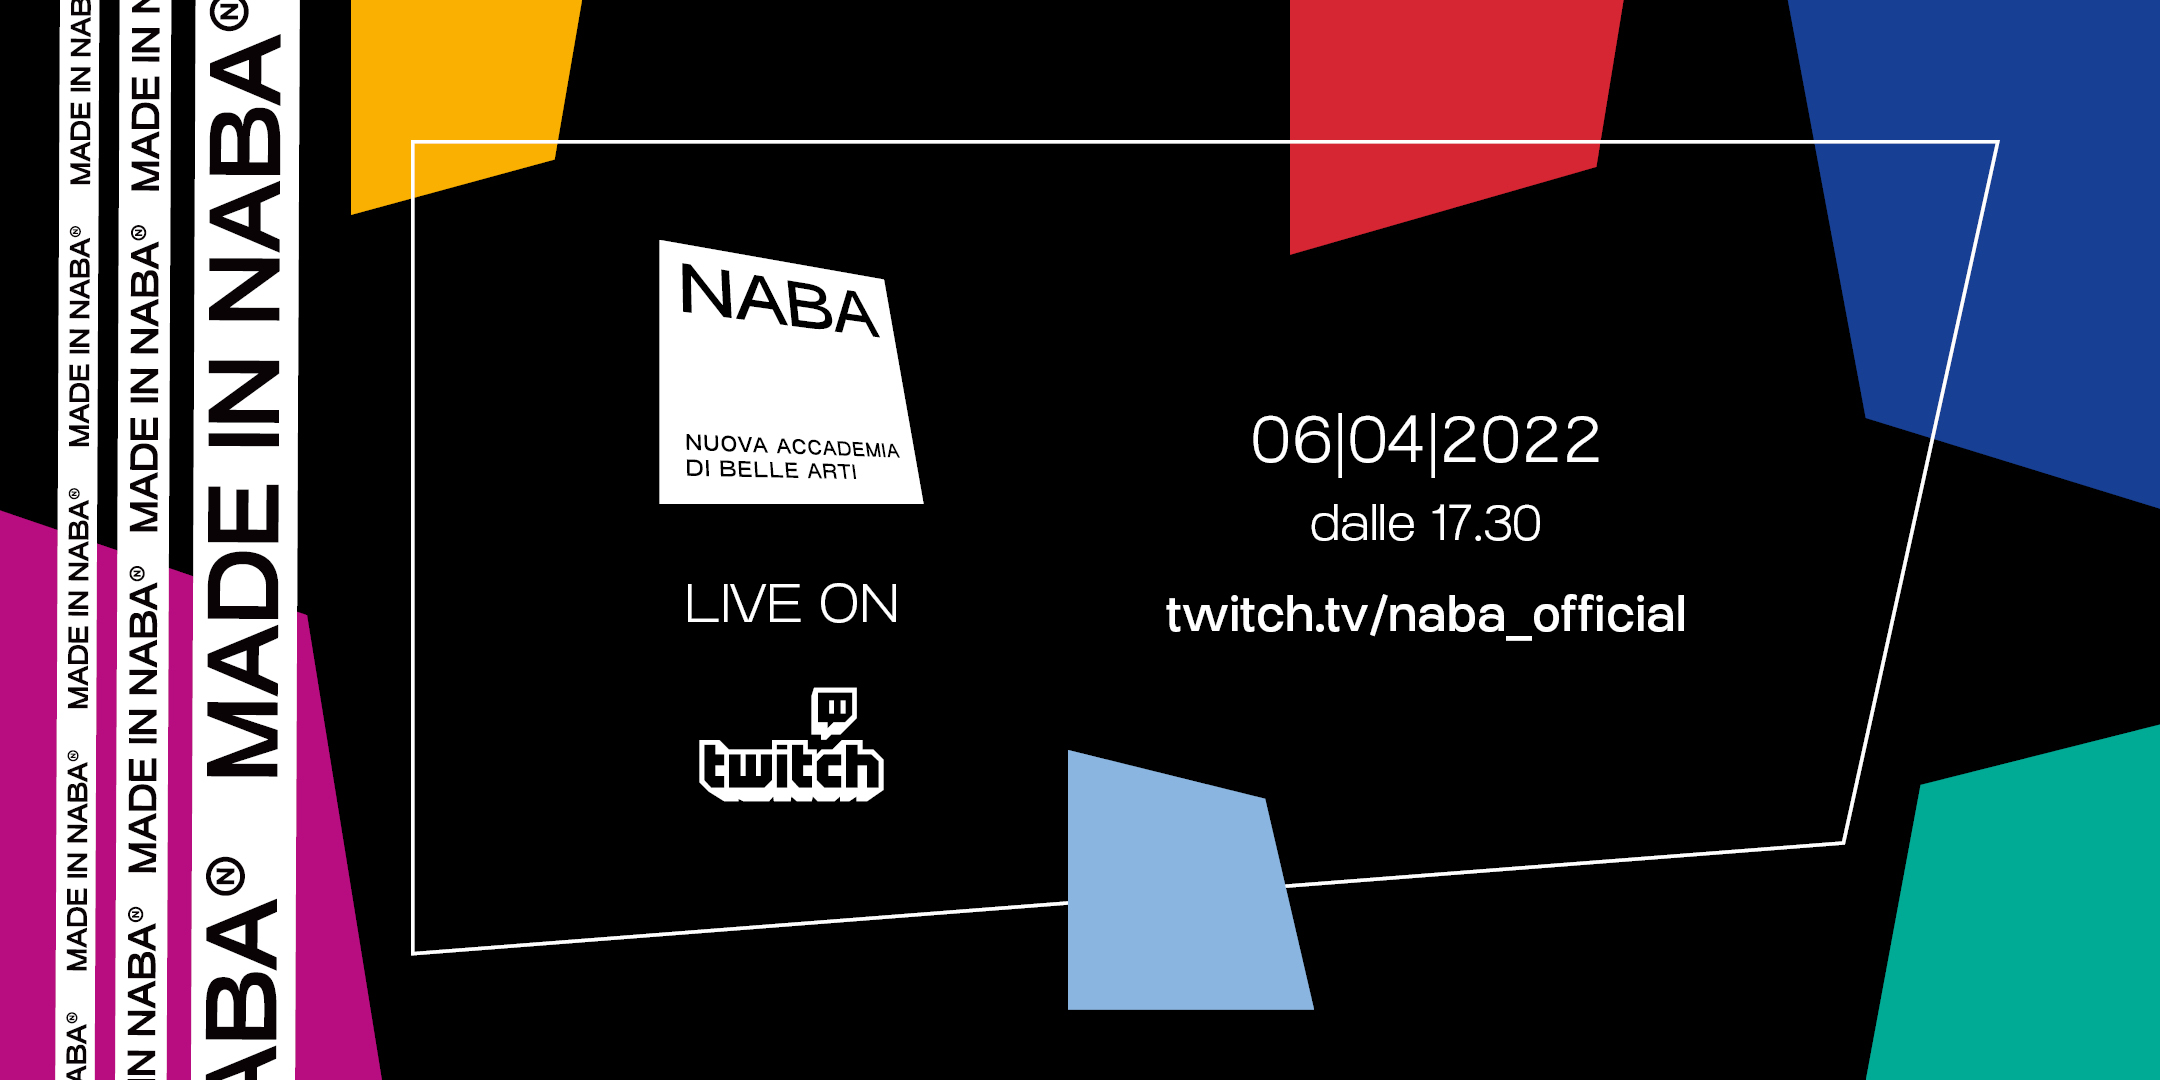 NABA, Nuova Accademia di Belle Arti lancia un proprio canale Twitch con Manuelito Hell Raton thumbnail